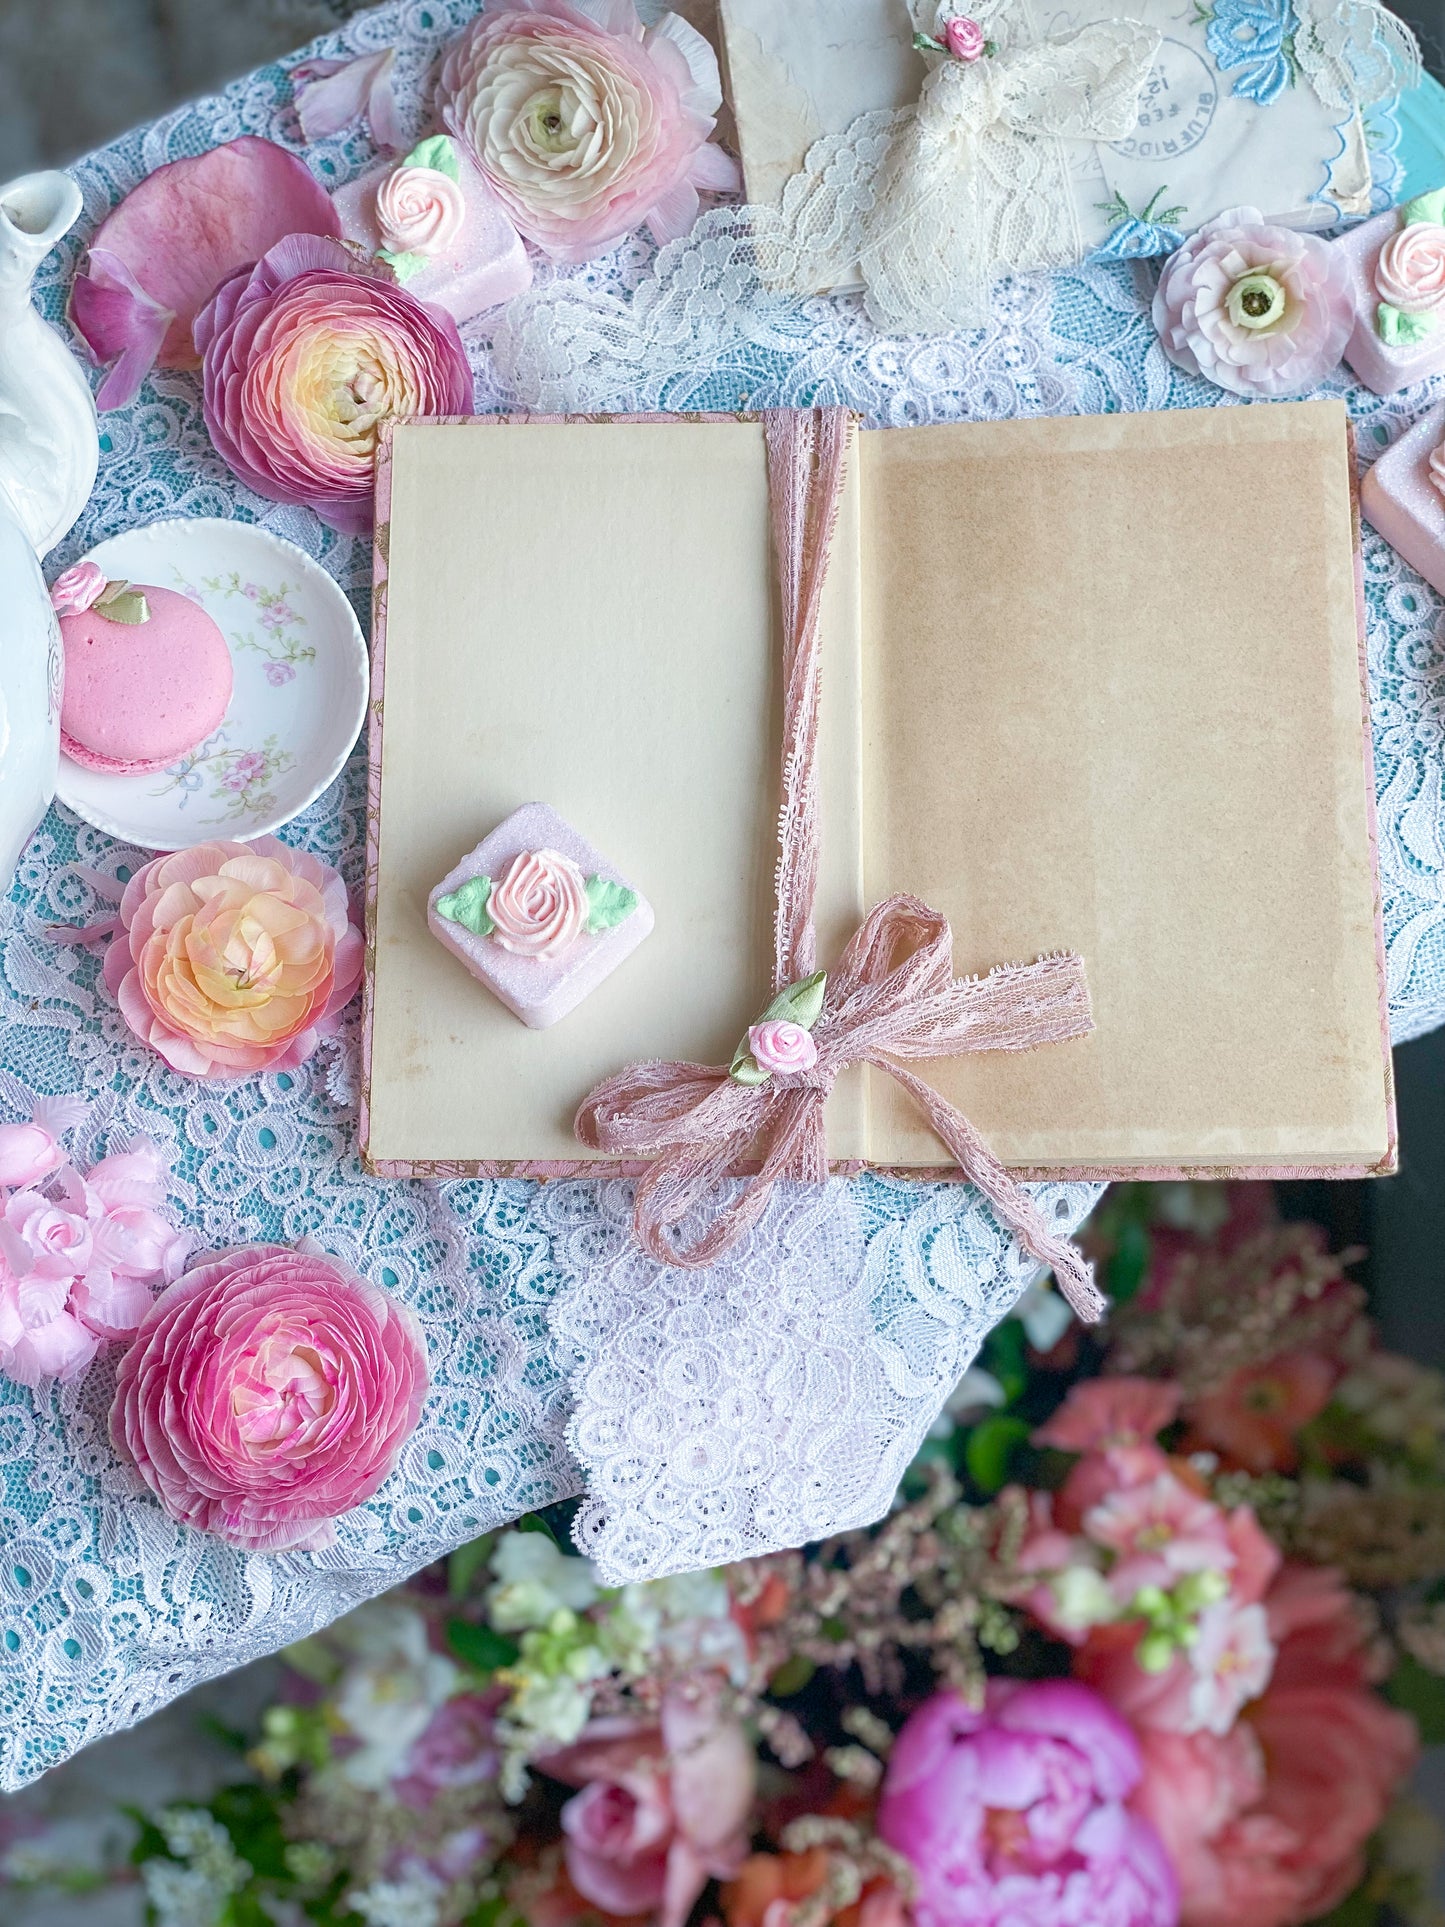 A mi madre - Libro de regalos rosa y dorado para el día de la madre